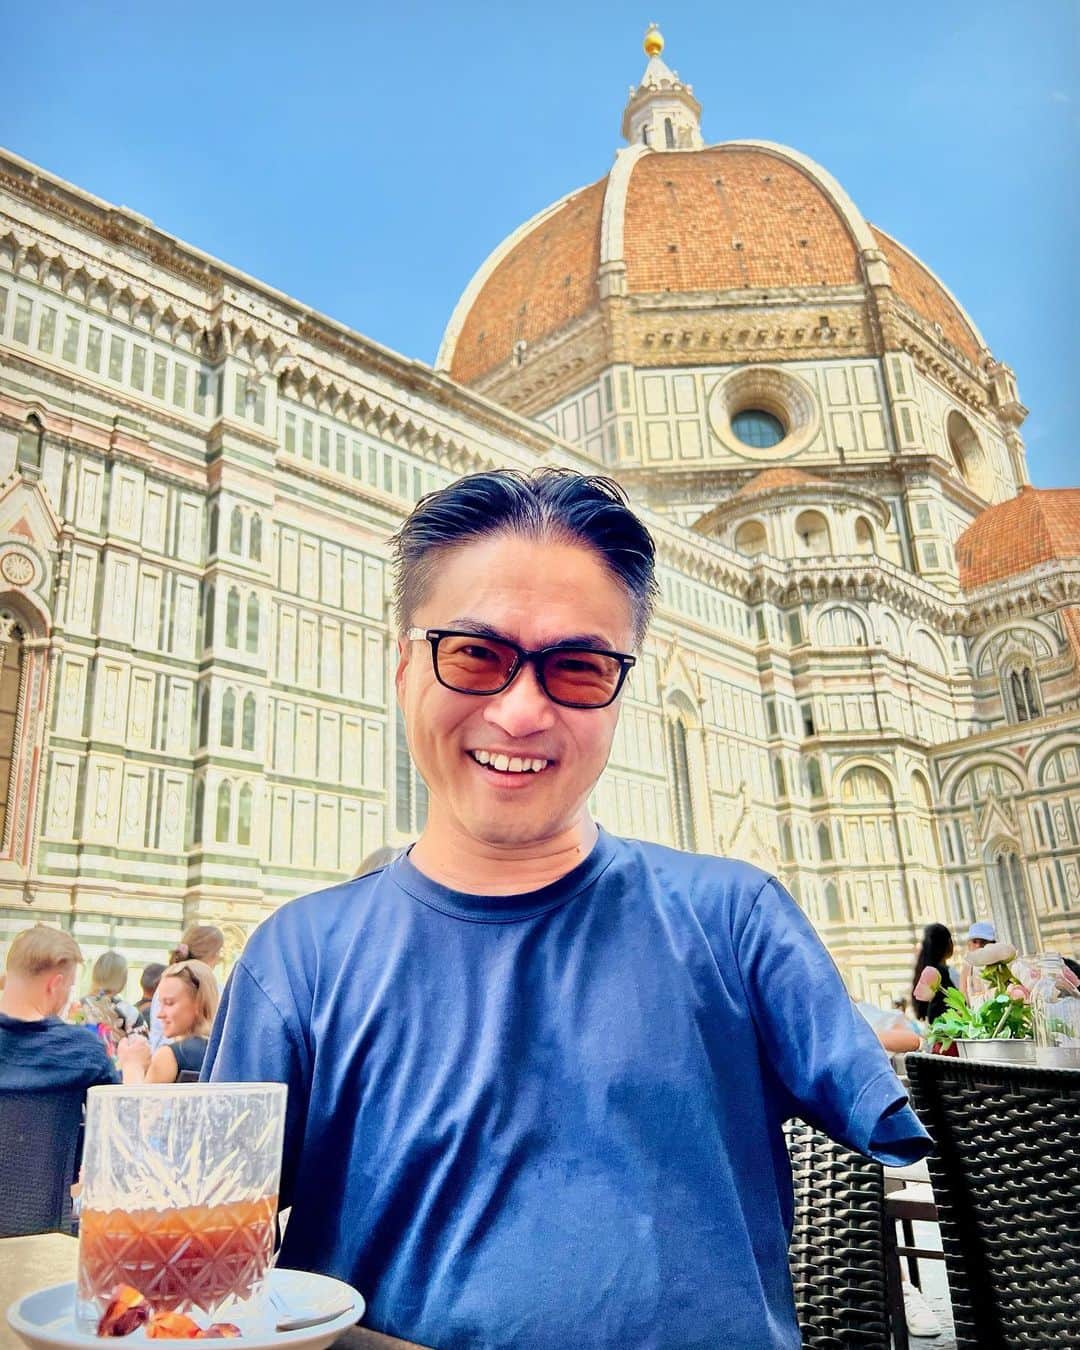 乙武洋匡のインスタグラム：「【#Firenze①】Firenzeといえば、やはりドゥオモ。正式名称は「サンタ・マリア・デル・フィオーレ大聖堂」と言うのだとか。私と同年代の方は、『#冷静と情熱のあいだ』を思い出すかもしれませんね。  じつはこのドゥオモ、登れるんです。映画でも登ってたでしょう。でも、ドゥオモに登ってしまうと、当たり前だけどドゥオモを見ることができない。そこで、私たちはその真横に建っている「#ジョットの鐘楼」に登ることに。  414段の石段。6枚目の写真を見てもらえばわかるようにゾッとするほどの高さなのですが、日頃から階段トレーニングで鍛えてる以上、やるしかありません。小一時間かけ、汗だくになりながら何とかゴール。最上部から目にした景色は、それまでの労苦のご褒美と思えるほど素晴らしいものでした。  Firenze滞在中は、このドゥオモをどう味わい尽くすかに腐心していたと言っても過言ではないかもしれません。近づいてみたり、離れてみたり。はたまた高いところに登ってみたり。それほど魅力があり、存在感があるFirenzeのシンボルです。  ※ヘロヘロになりながらも最上部に到達する動画、ぜひ観てやってくださいね！」